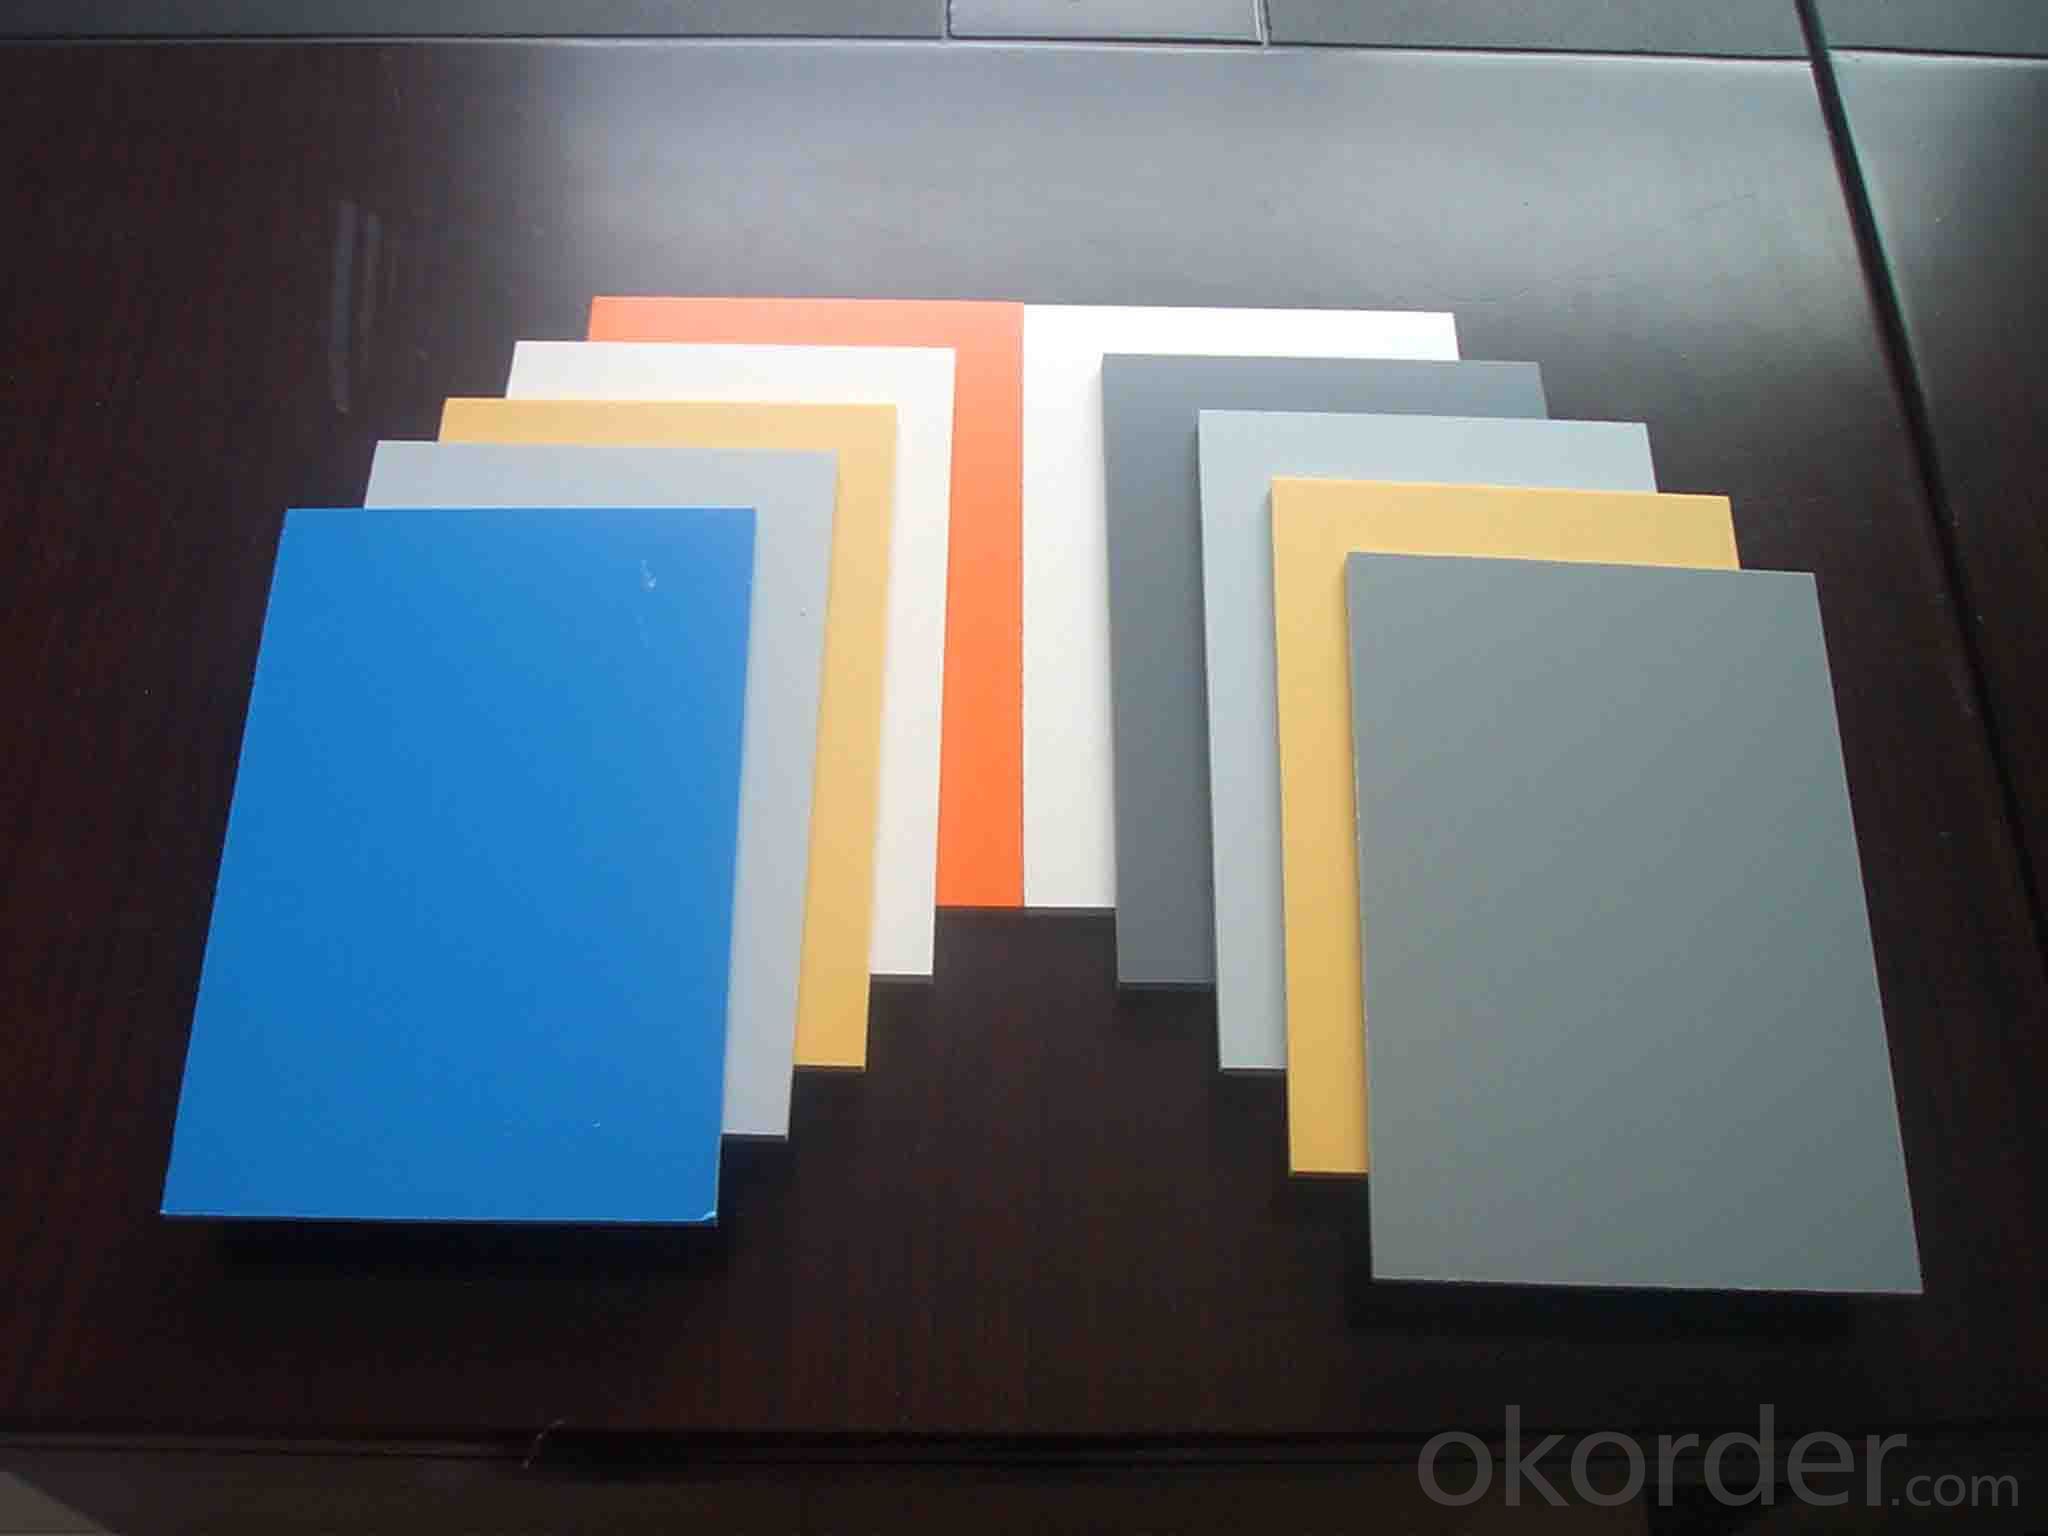 PVC foam board with different density/forex board